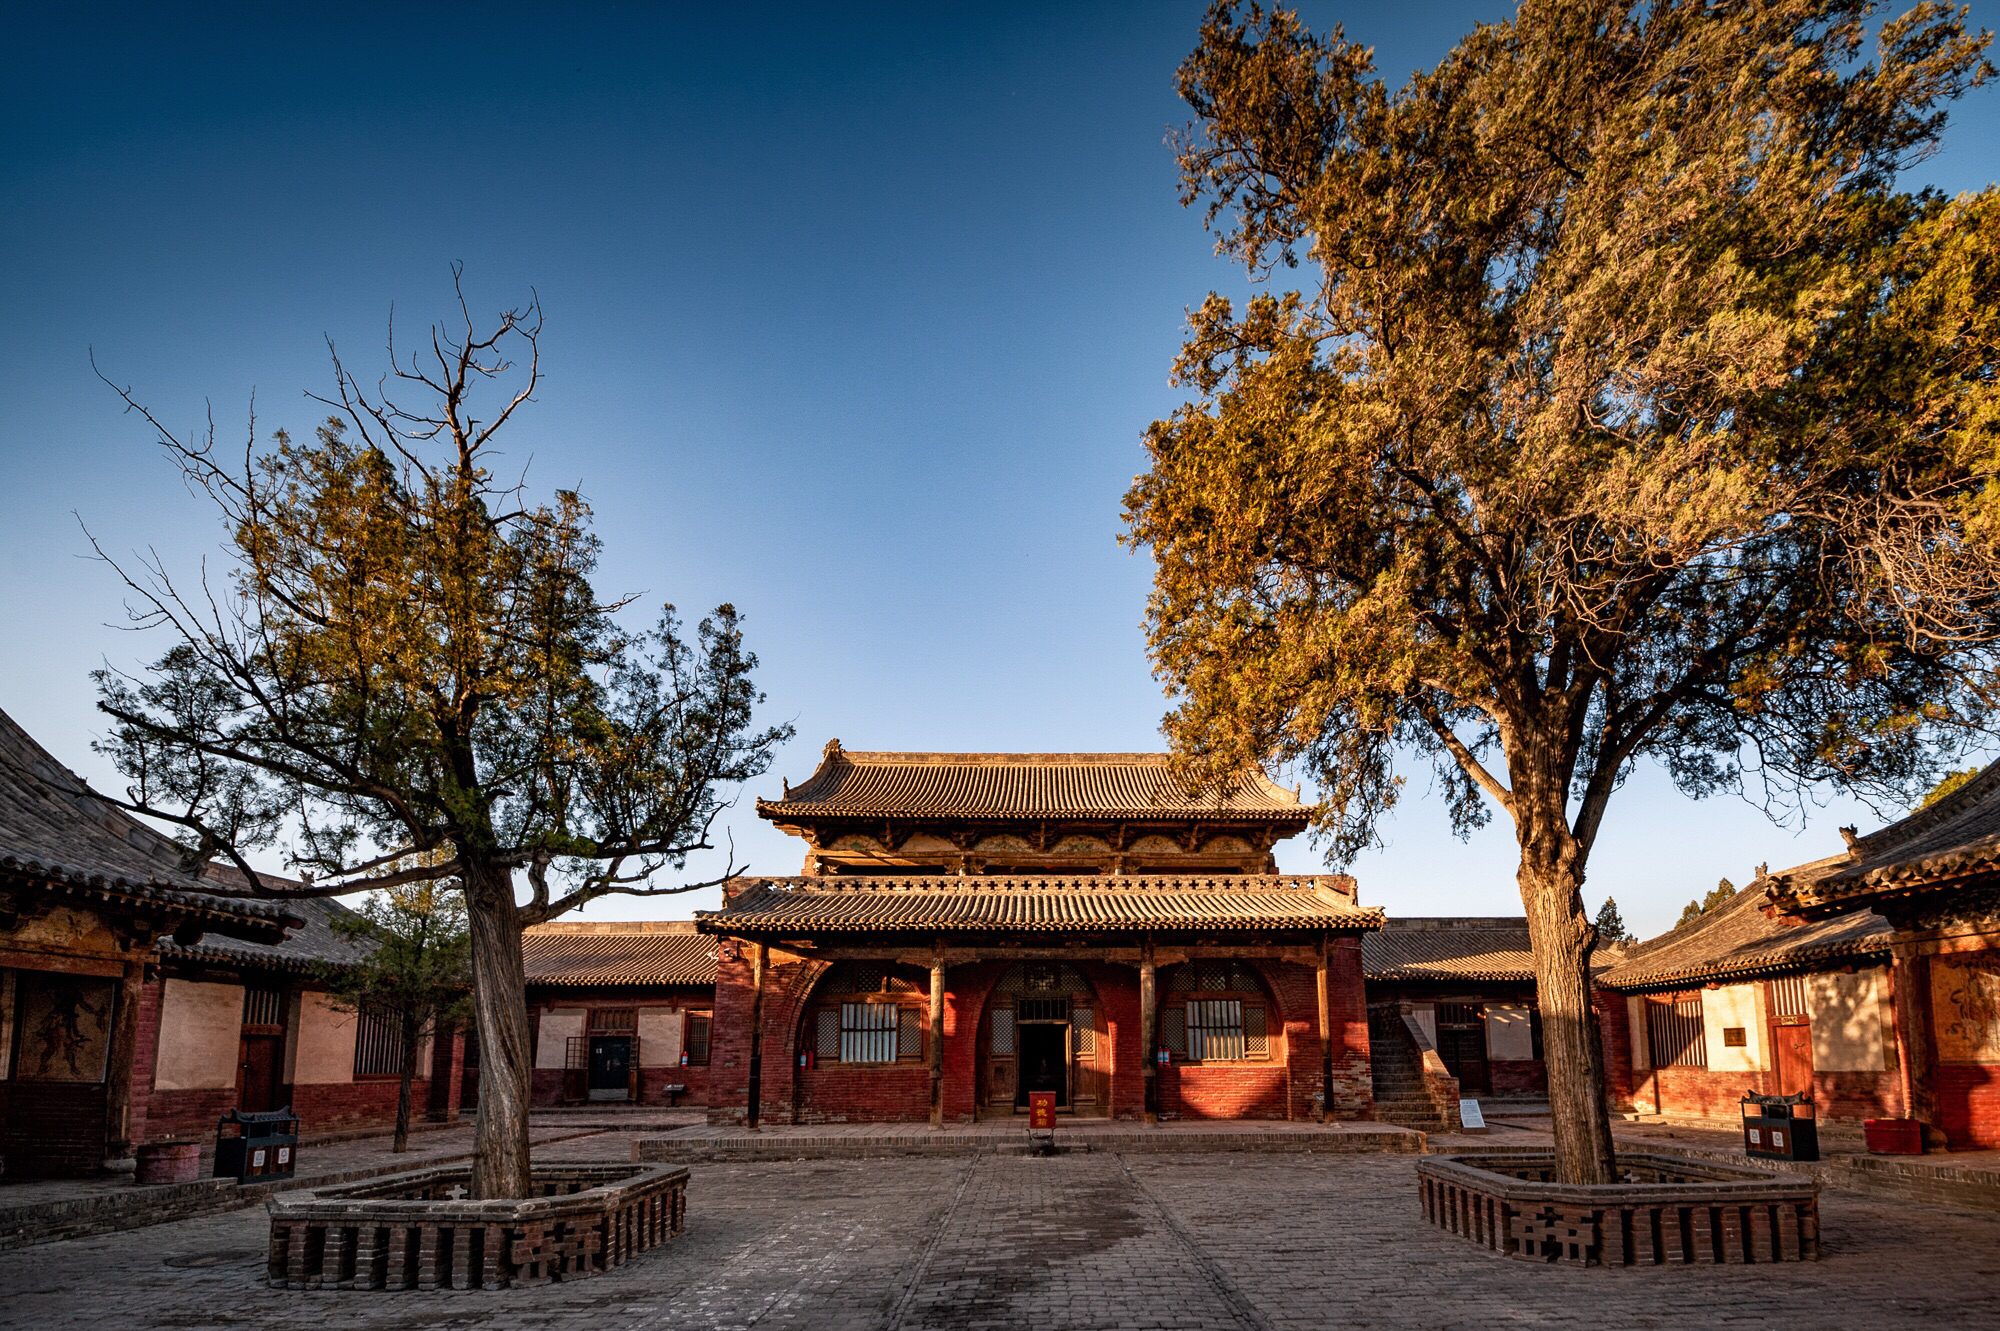 向西游摄美丽中国 （89） 山西篇 《芮城永乐宫》-中关村在线摄影论坛